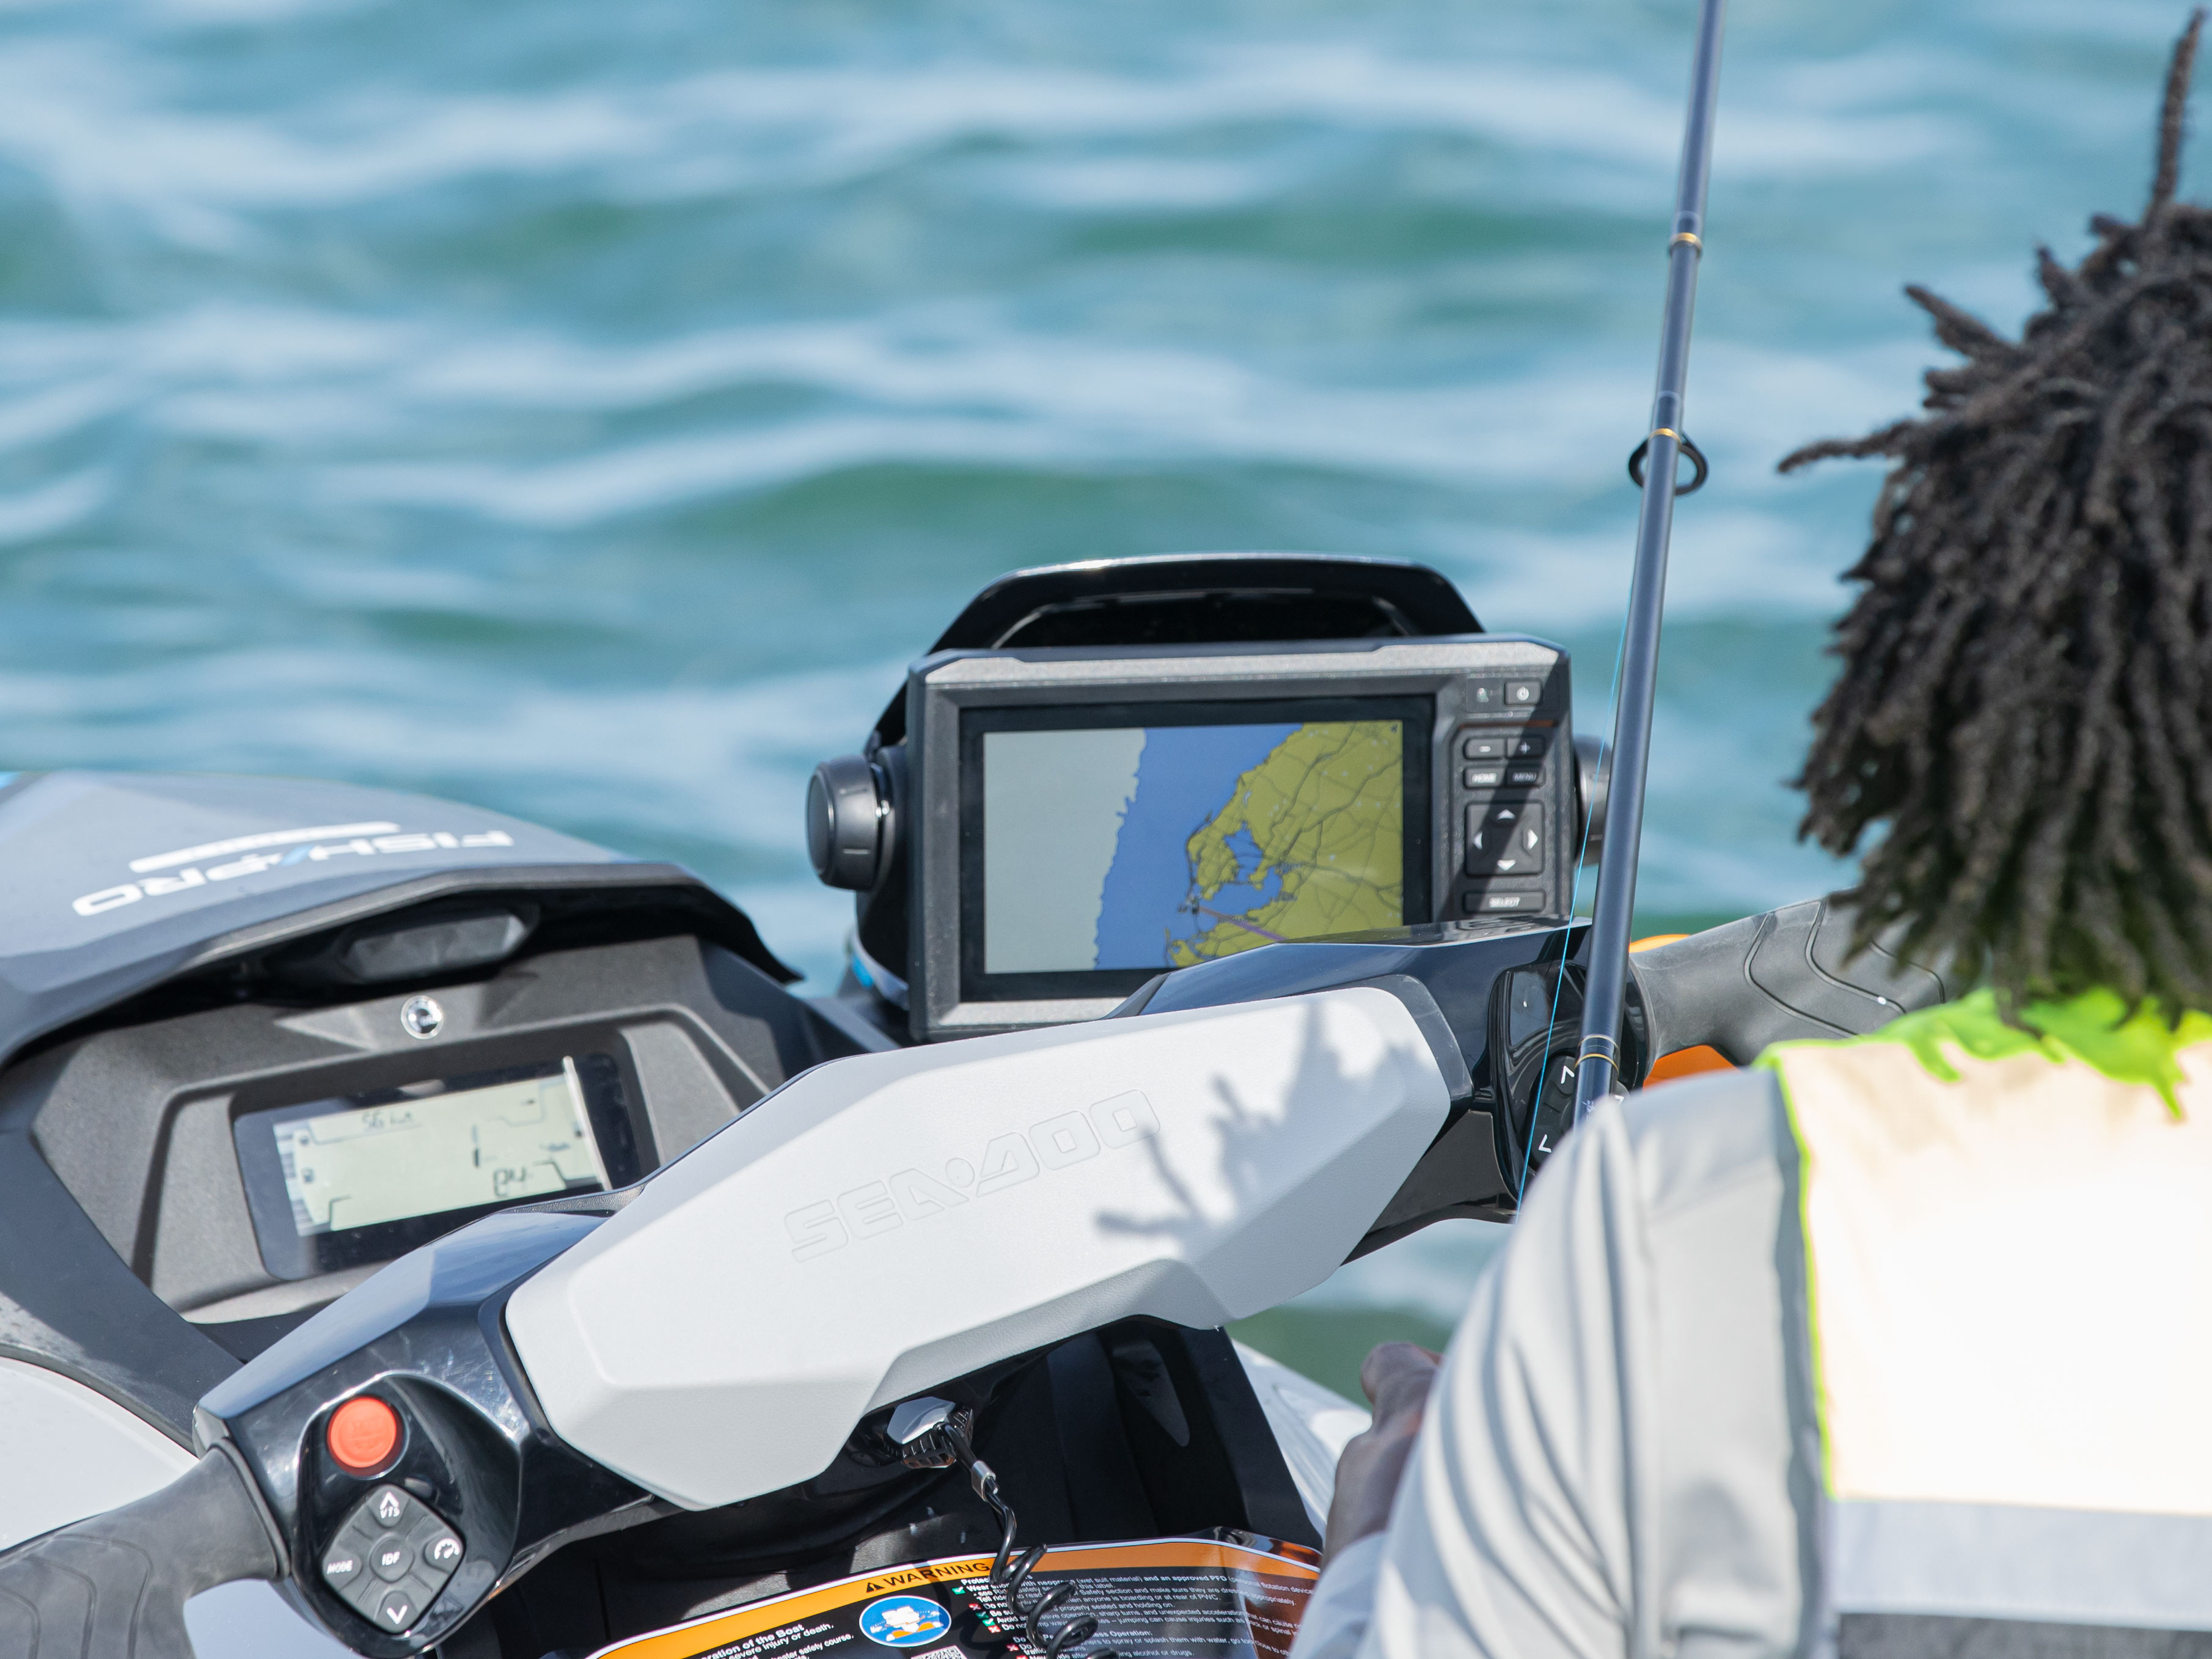 Sistema Garmin para navegación y localización de pesca